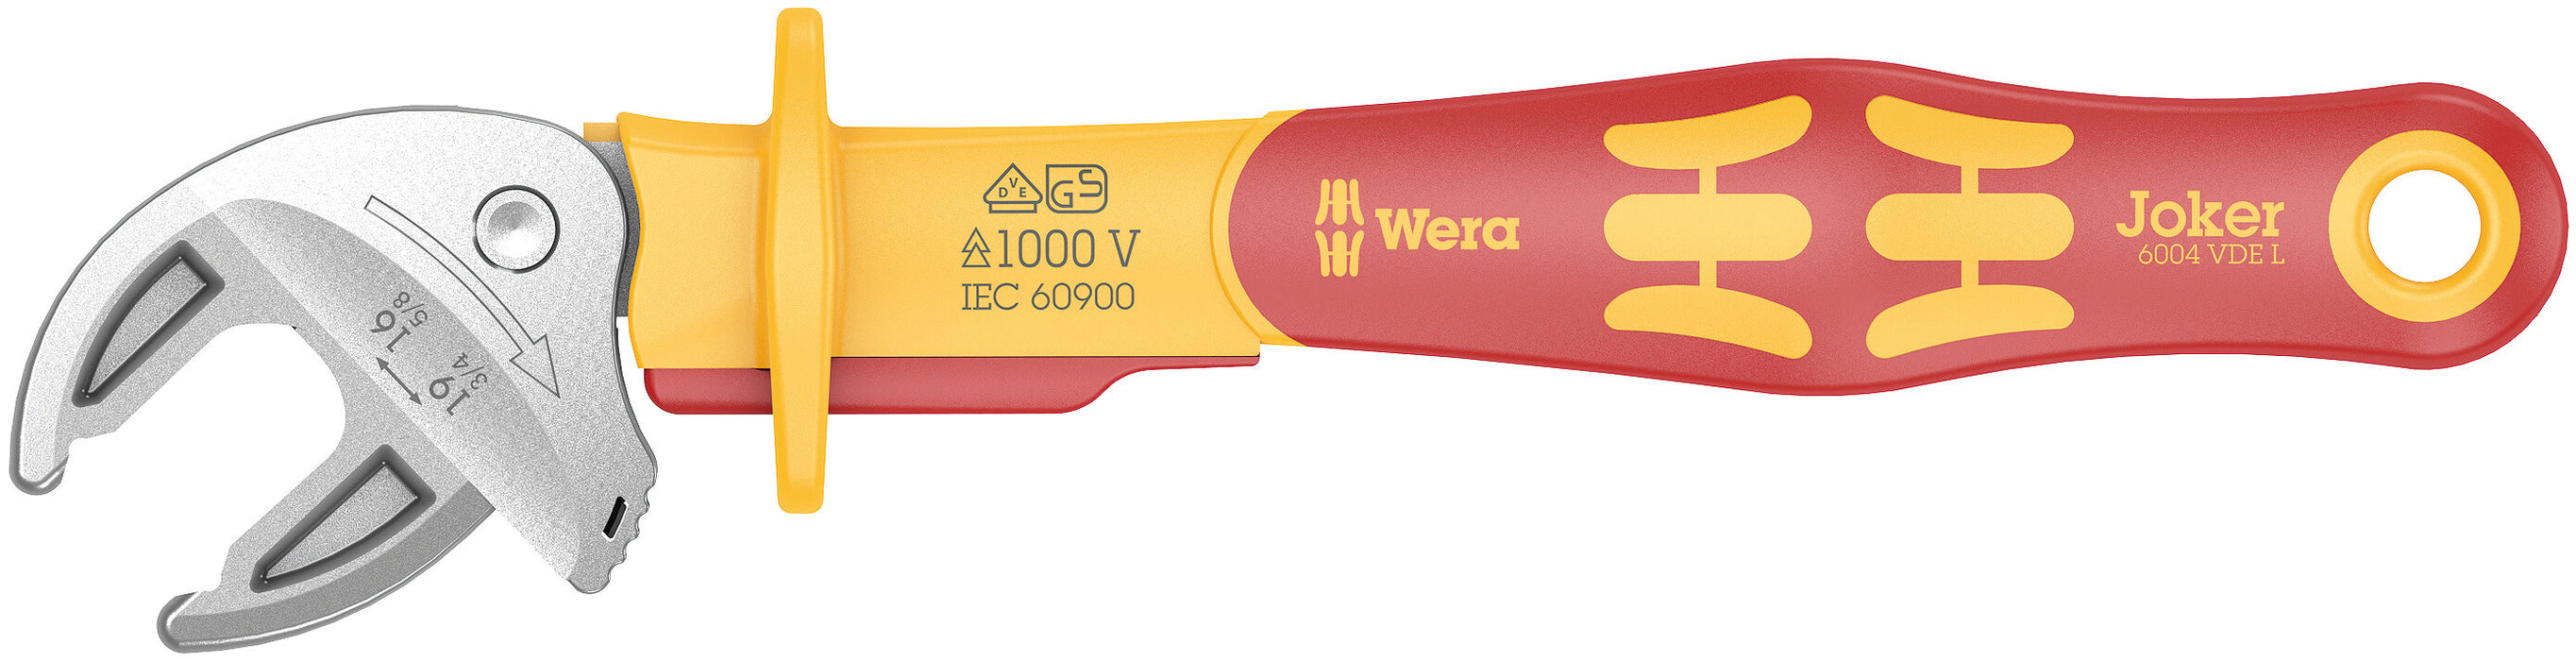 Wera 6004 Joker VDE L VDE-insulated self-setting spanner, 16-19 x 5/8-3/4" x 226 mm